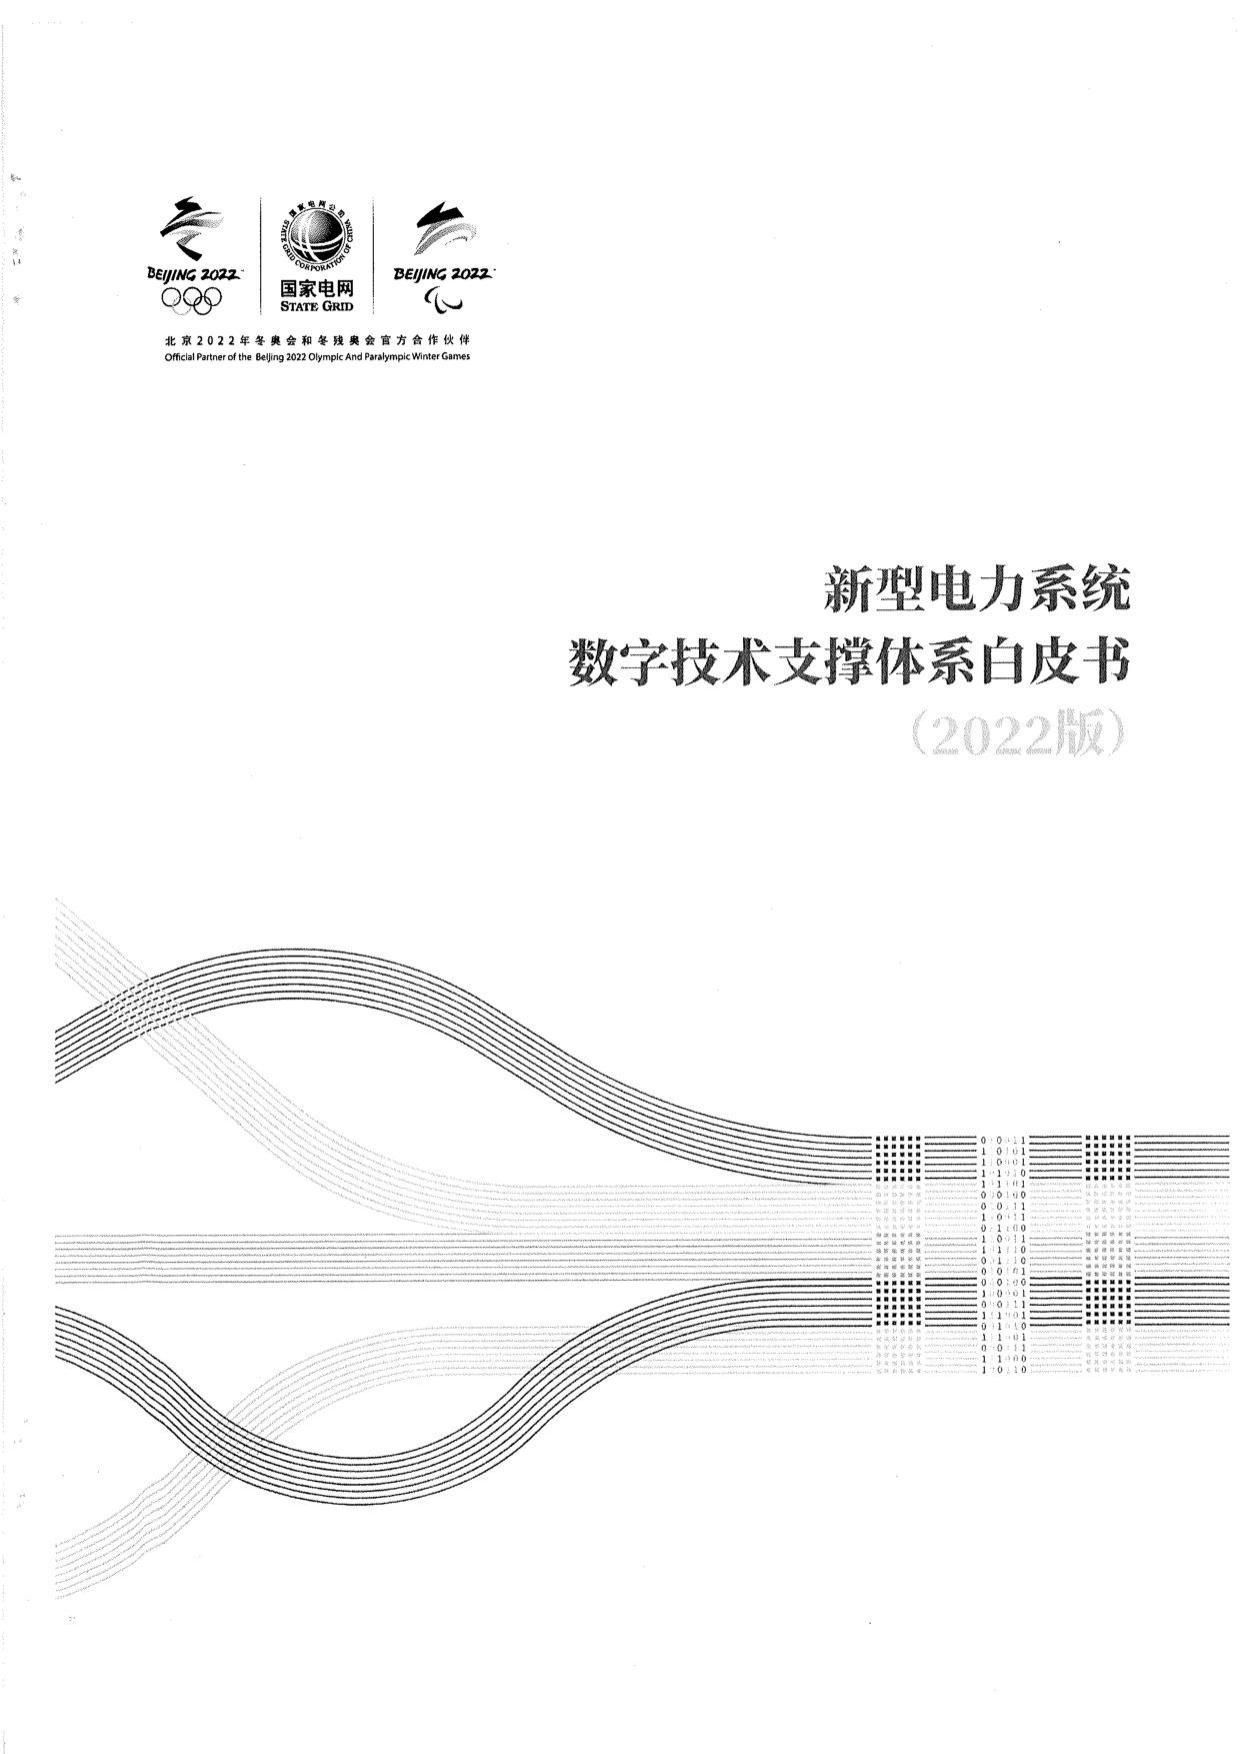 新型电力系统数字技术支撑体系白皮书（2022版）-国家电网-文献书典-pdf 